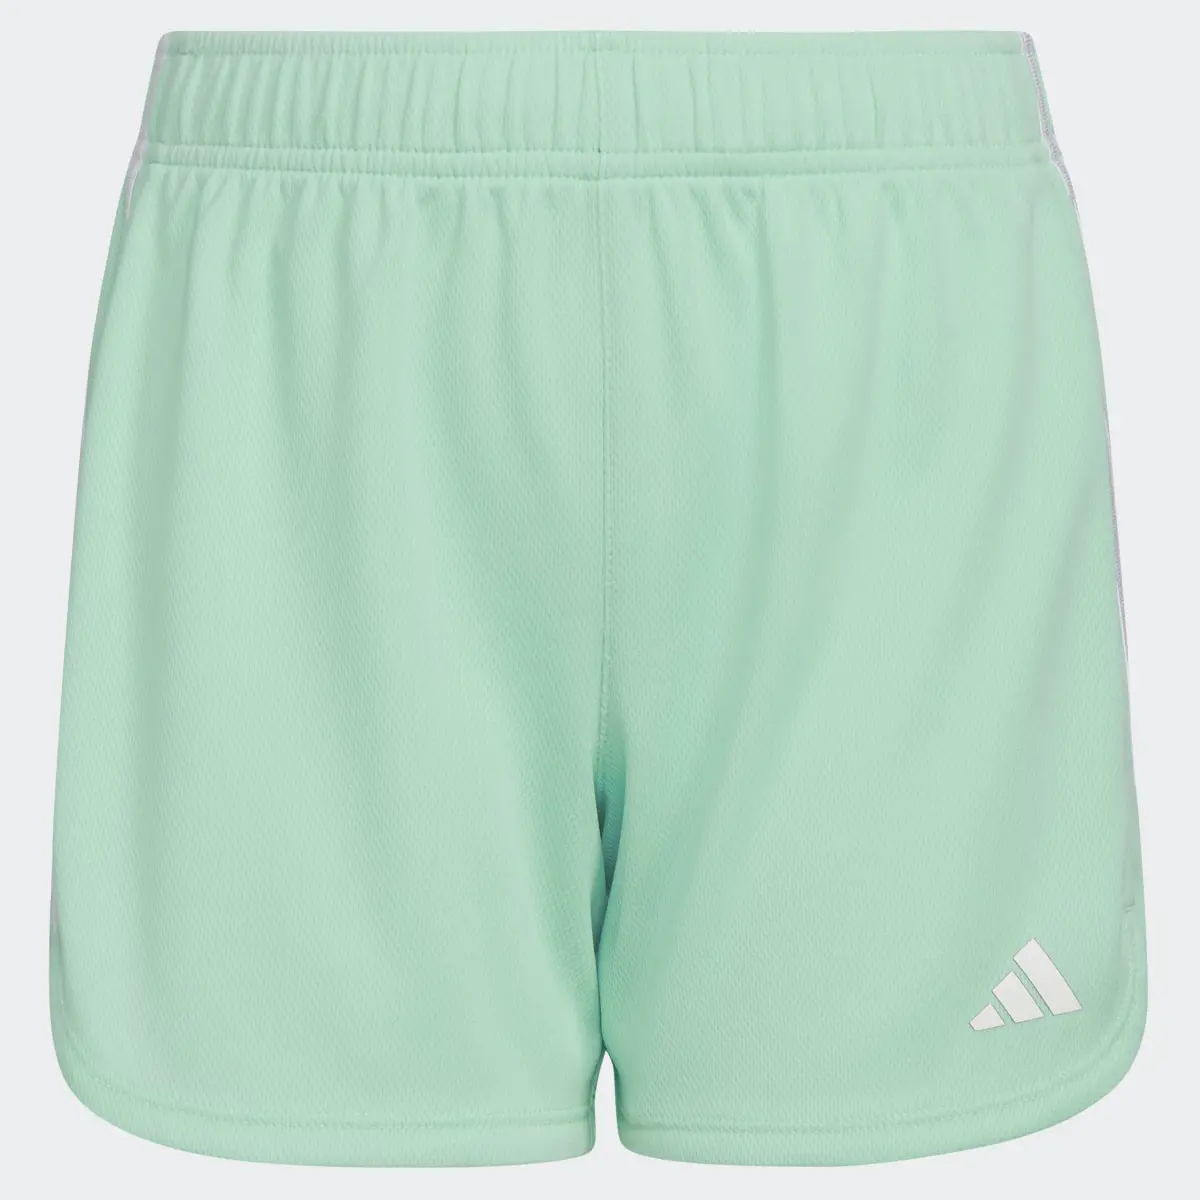 Adidas 3-Stripes Mesh Shorts. 3